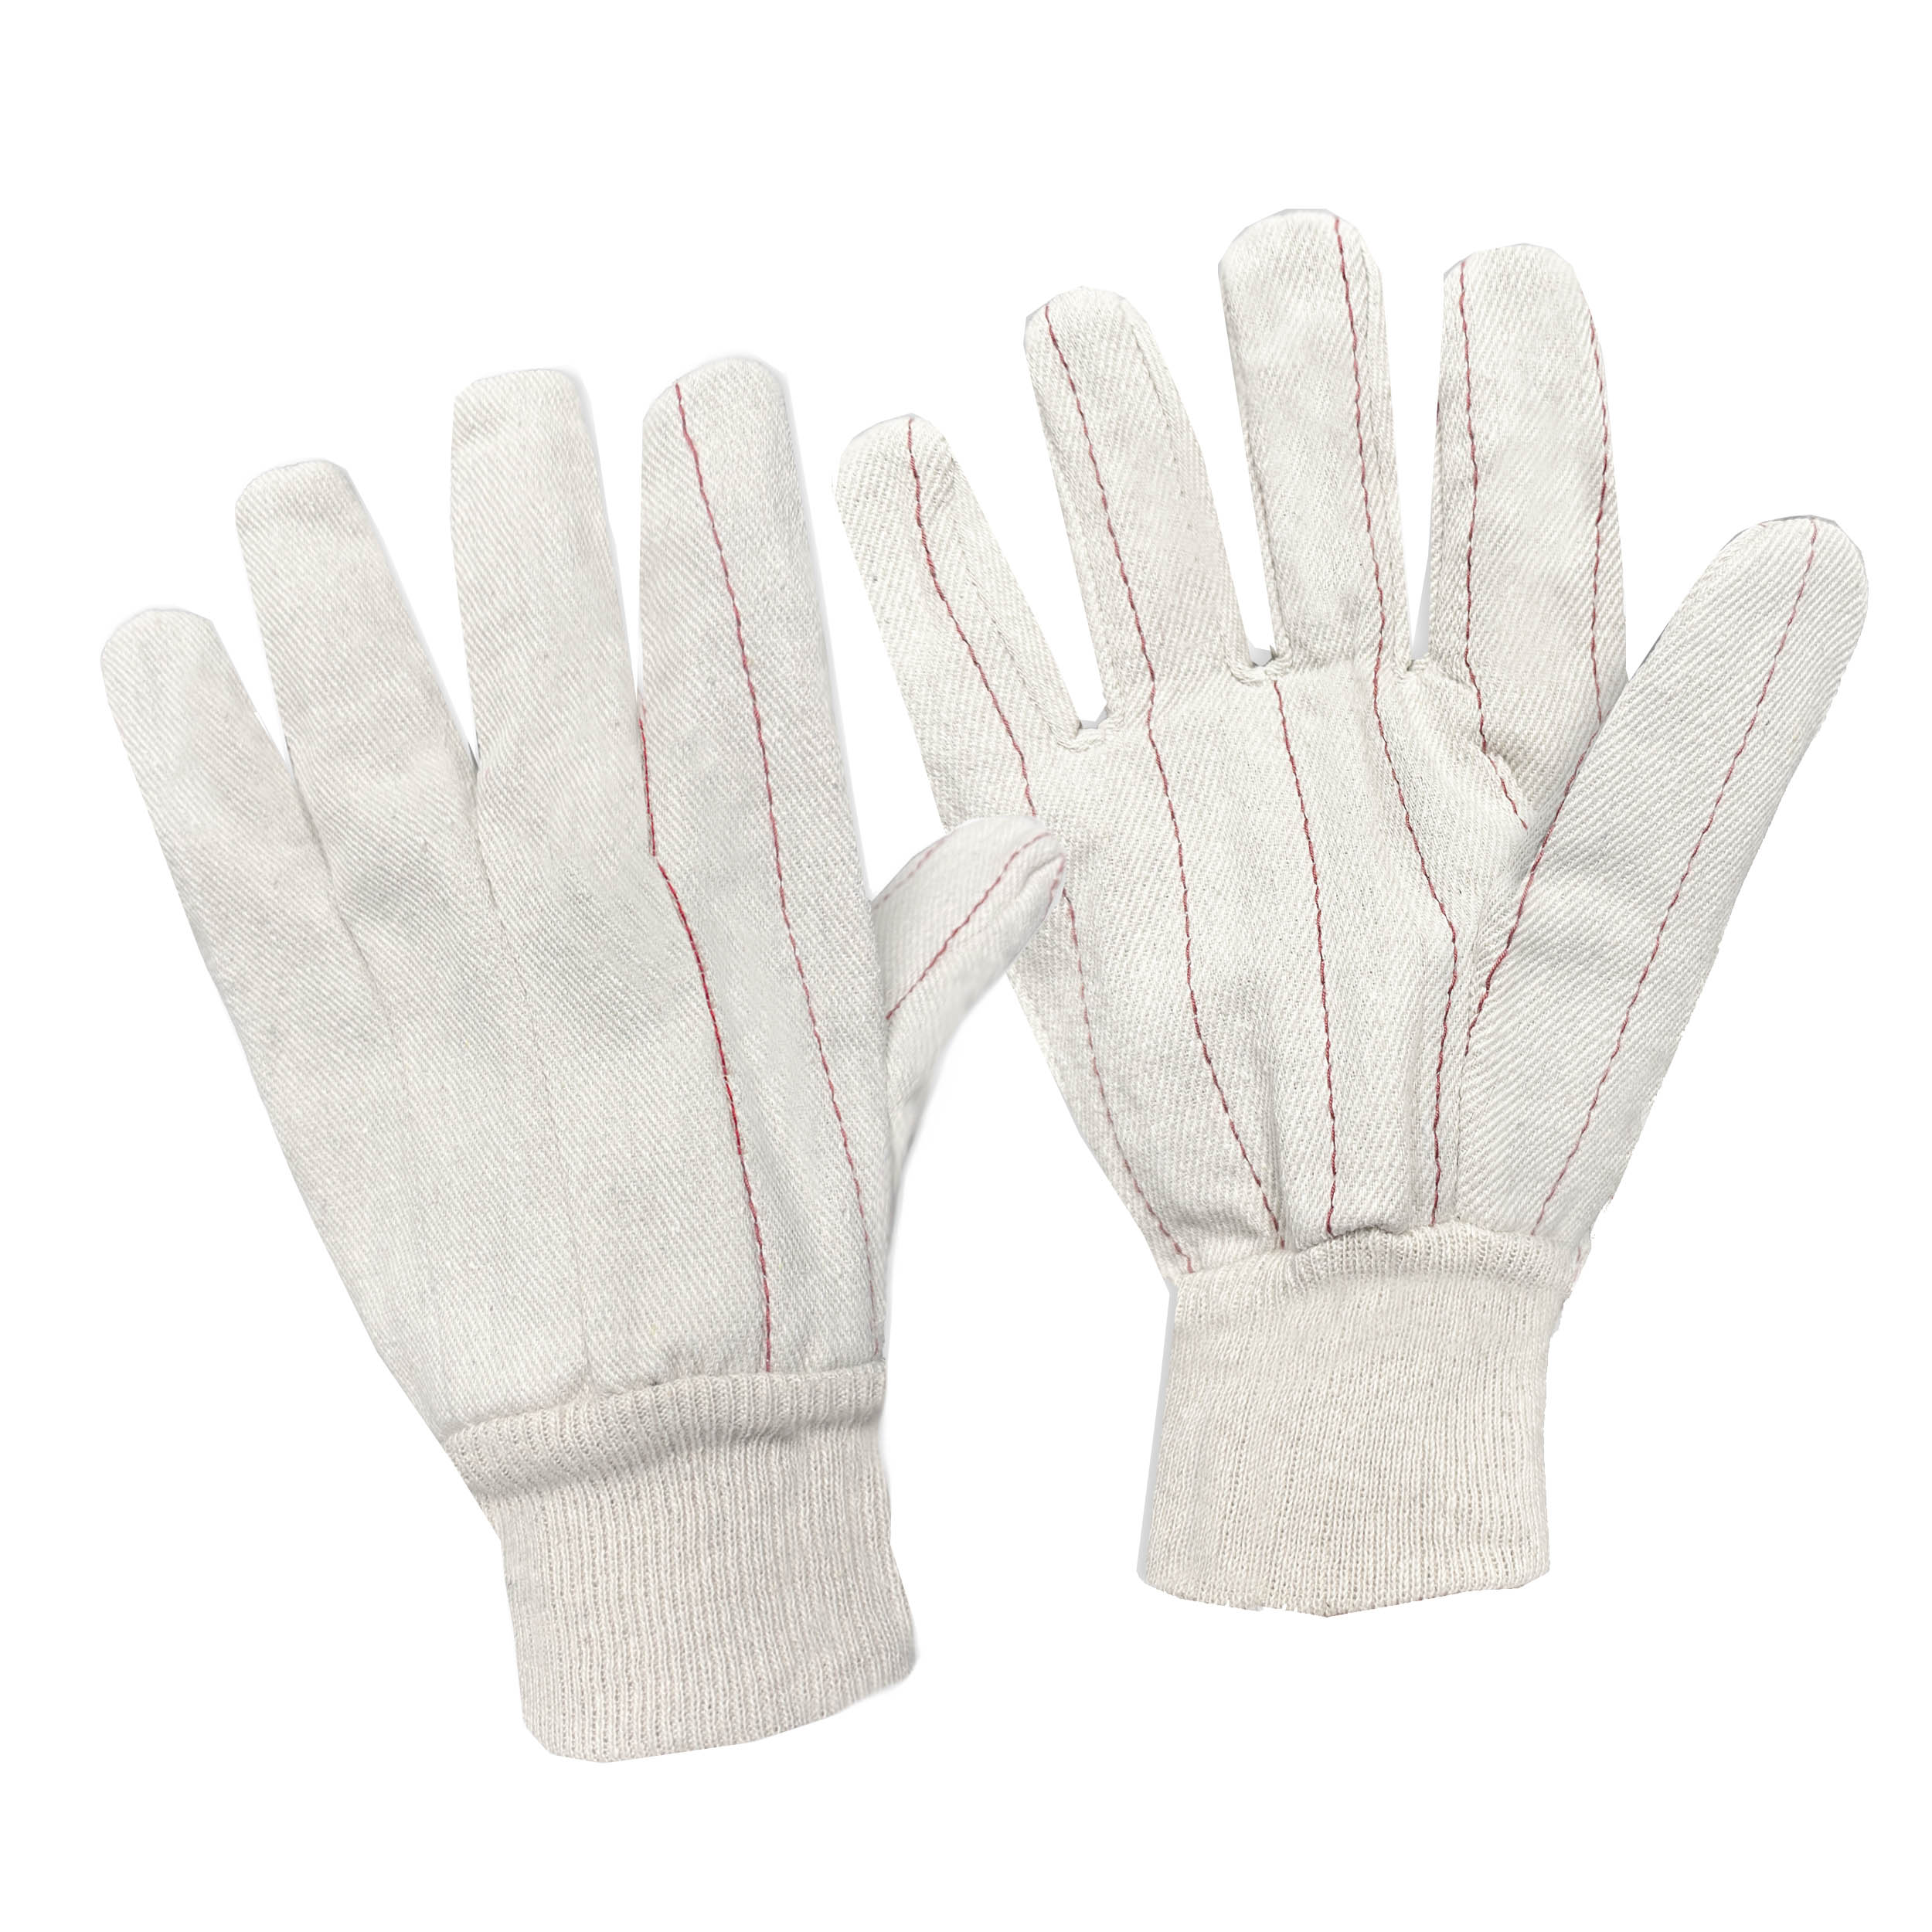 Cotton Double Palm Gloves, Knit Wrist